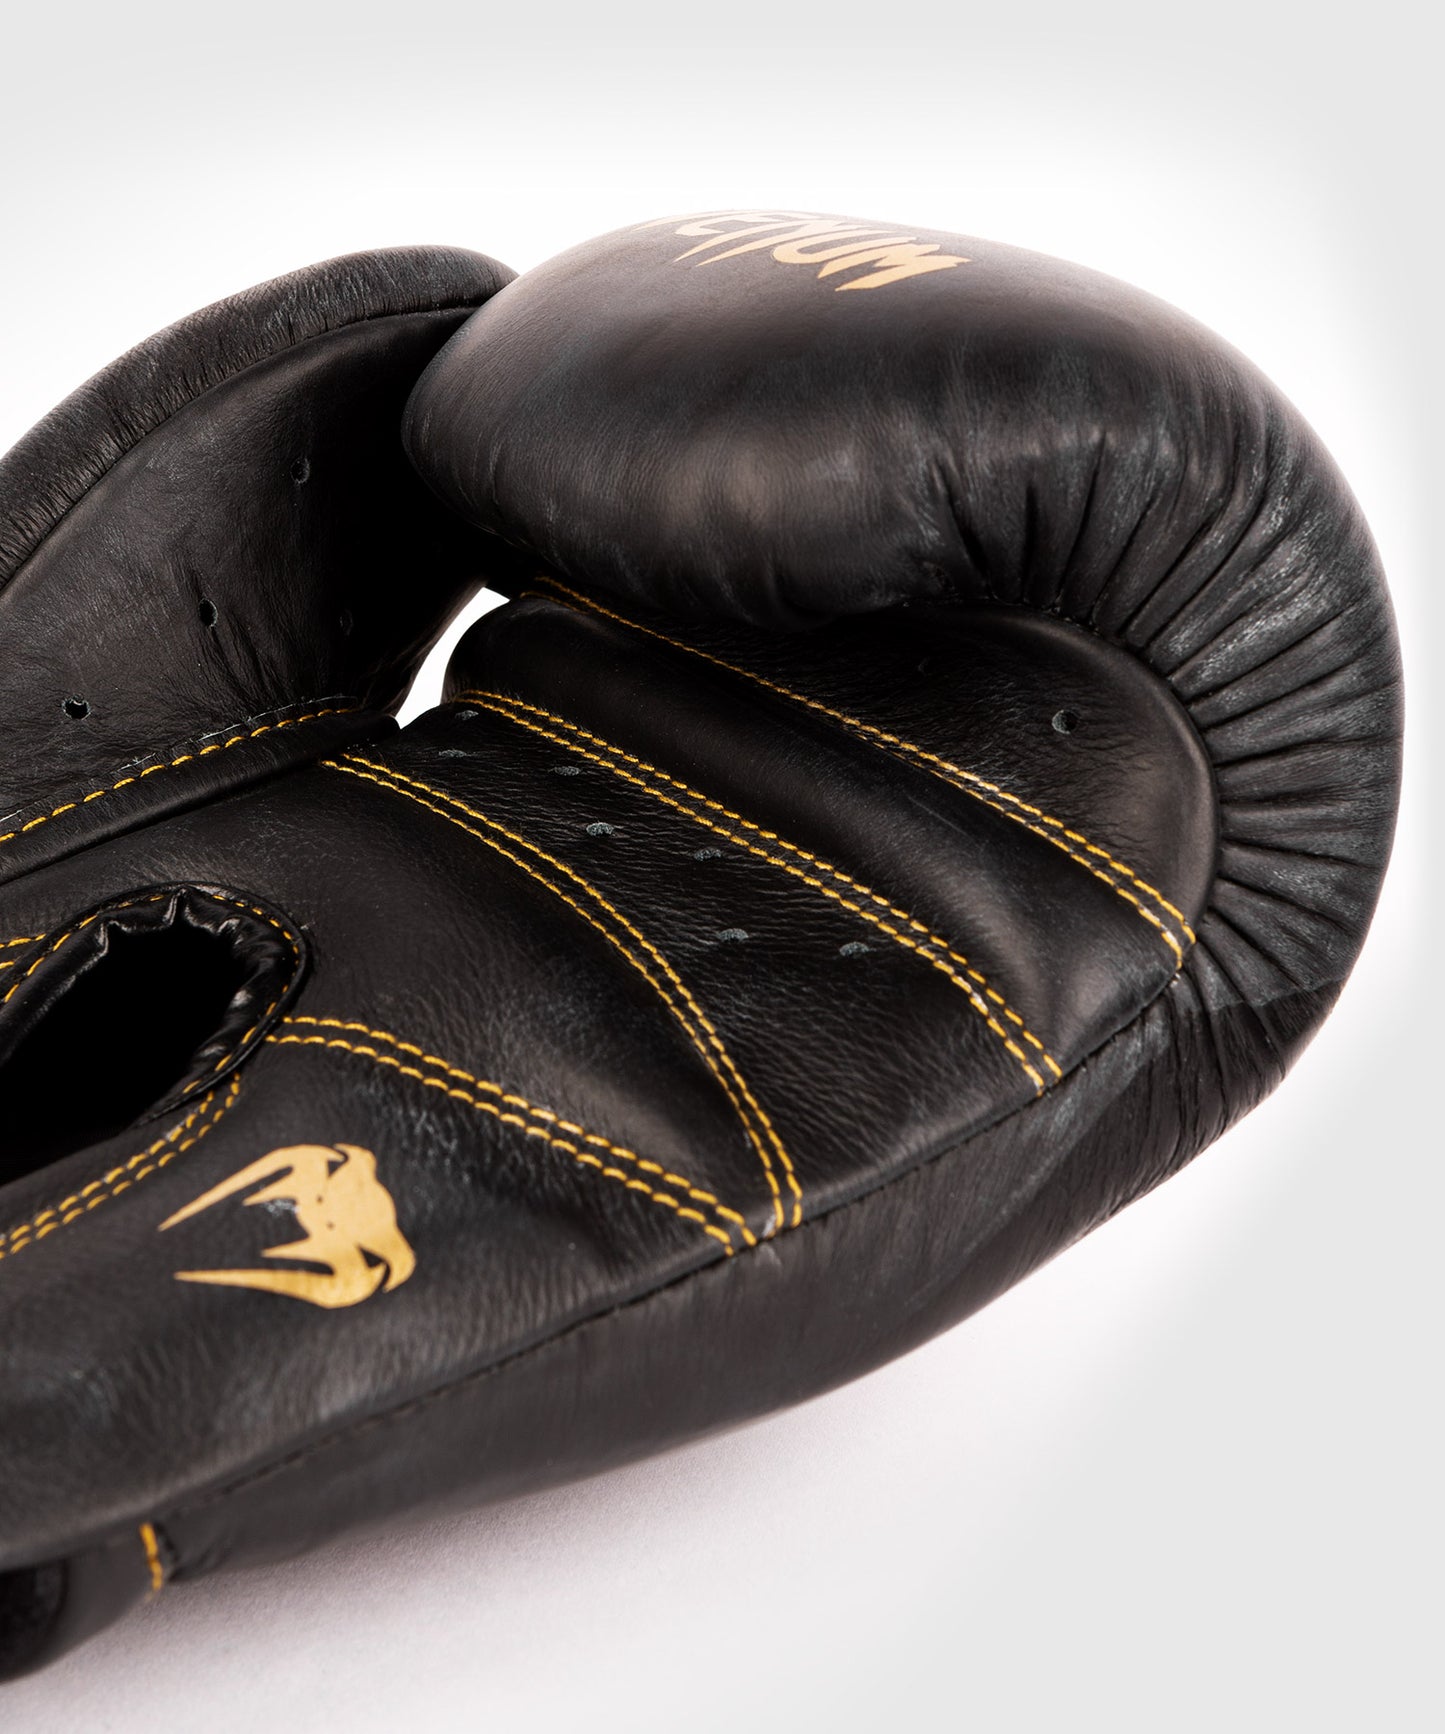 Venum Giant 2.0 Pro Боксерские перчатки на липучке - черный/черно-золотой